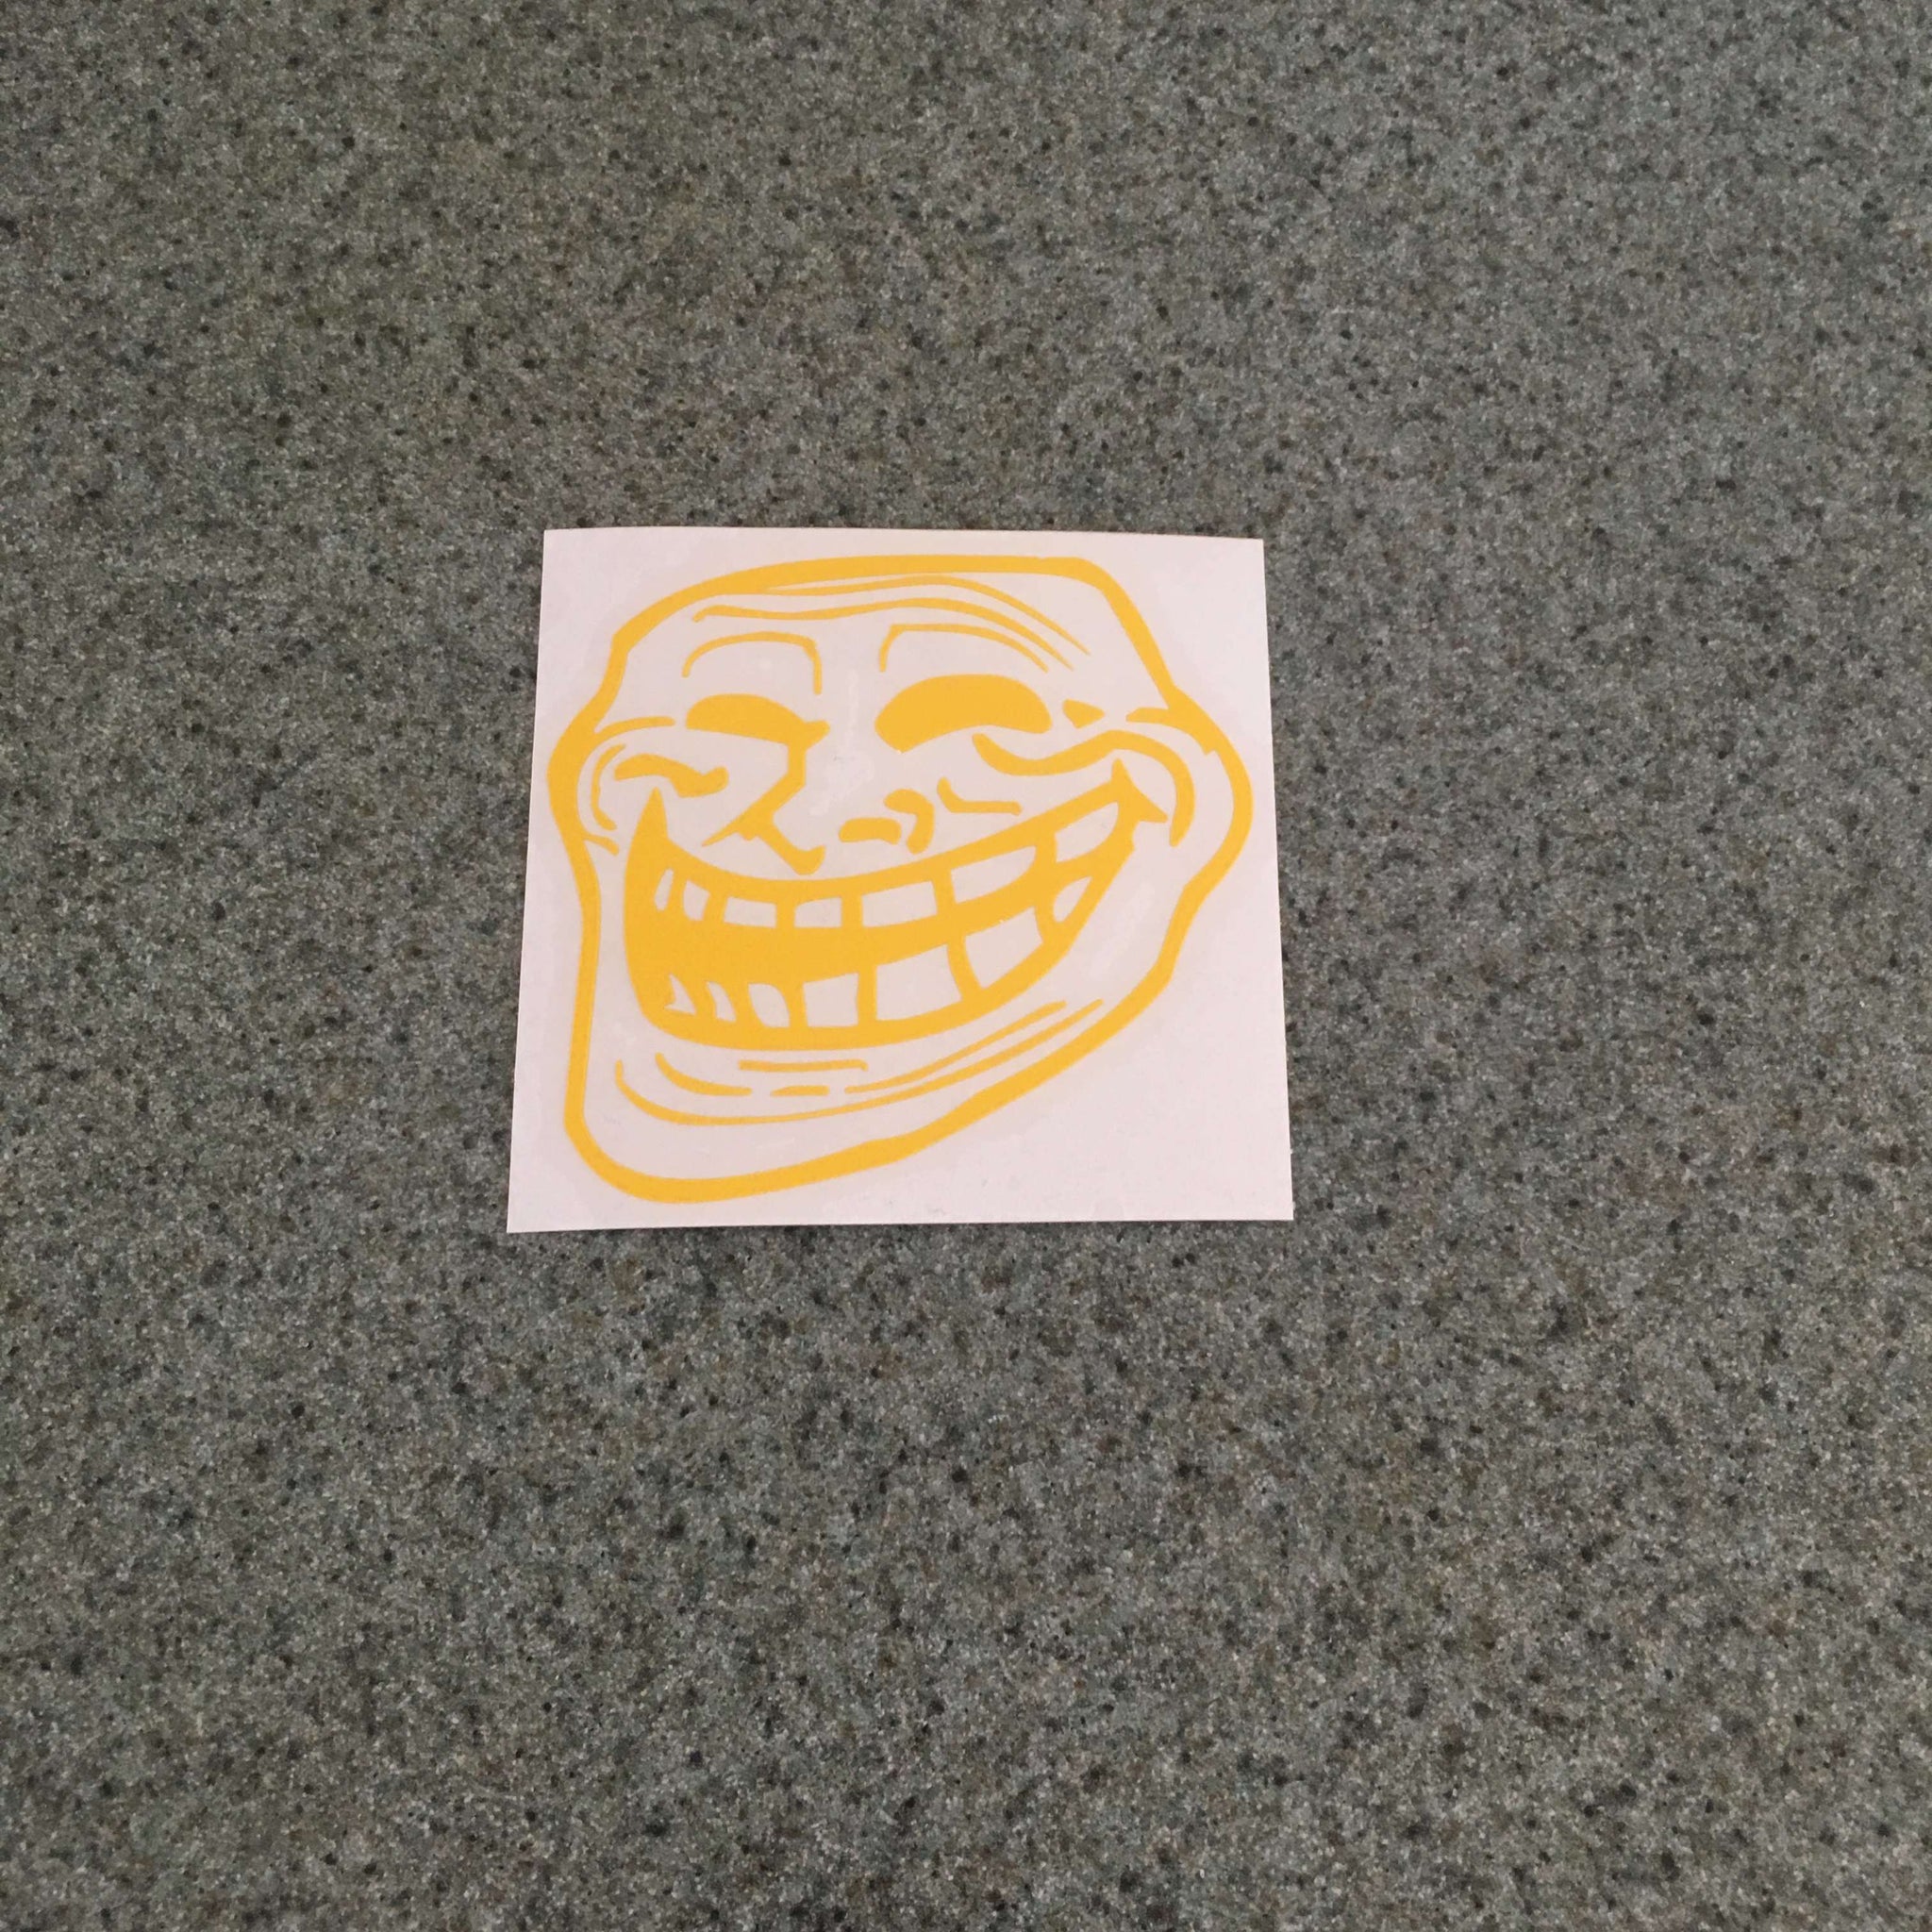 Troll Face Meme Sticker Vinyl Decal - Car Window Trollface Wall